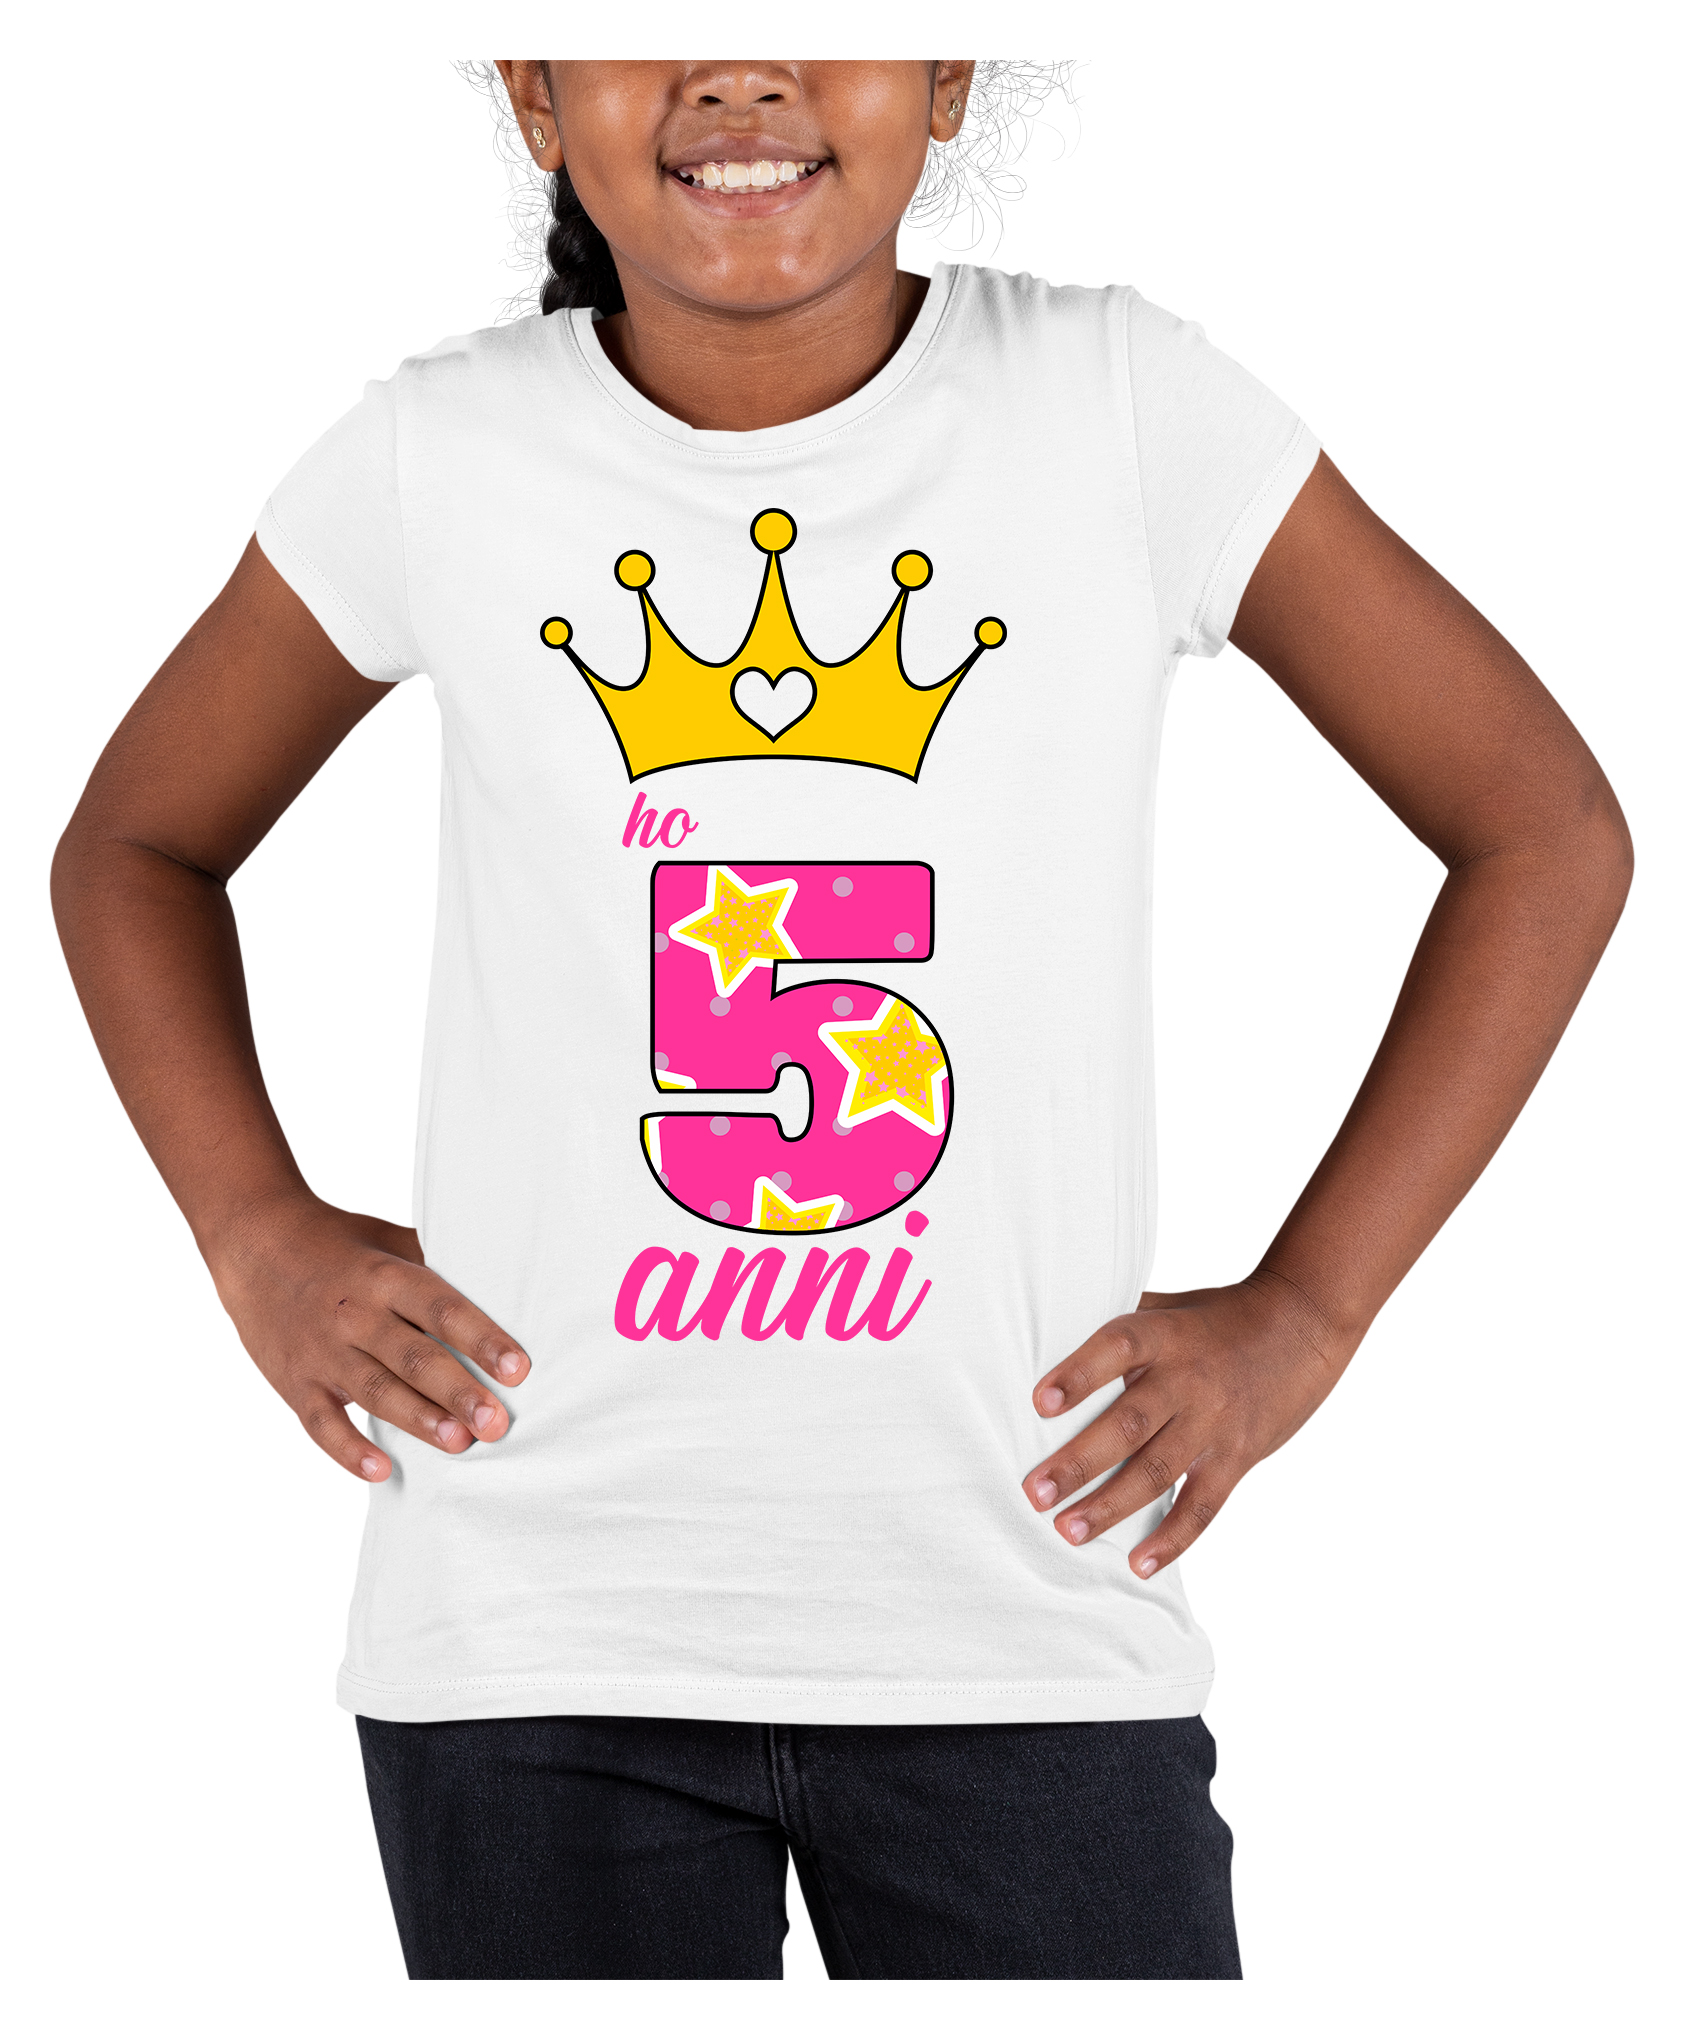 T-Shirt Maglietta Compleanno Bambina 5 anni Ho 5 anni Principessa